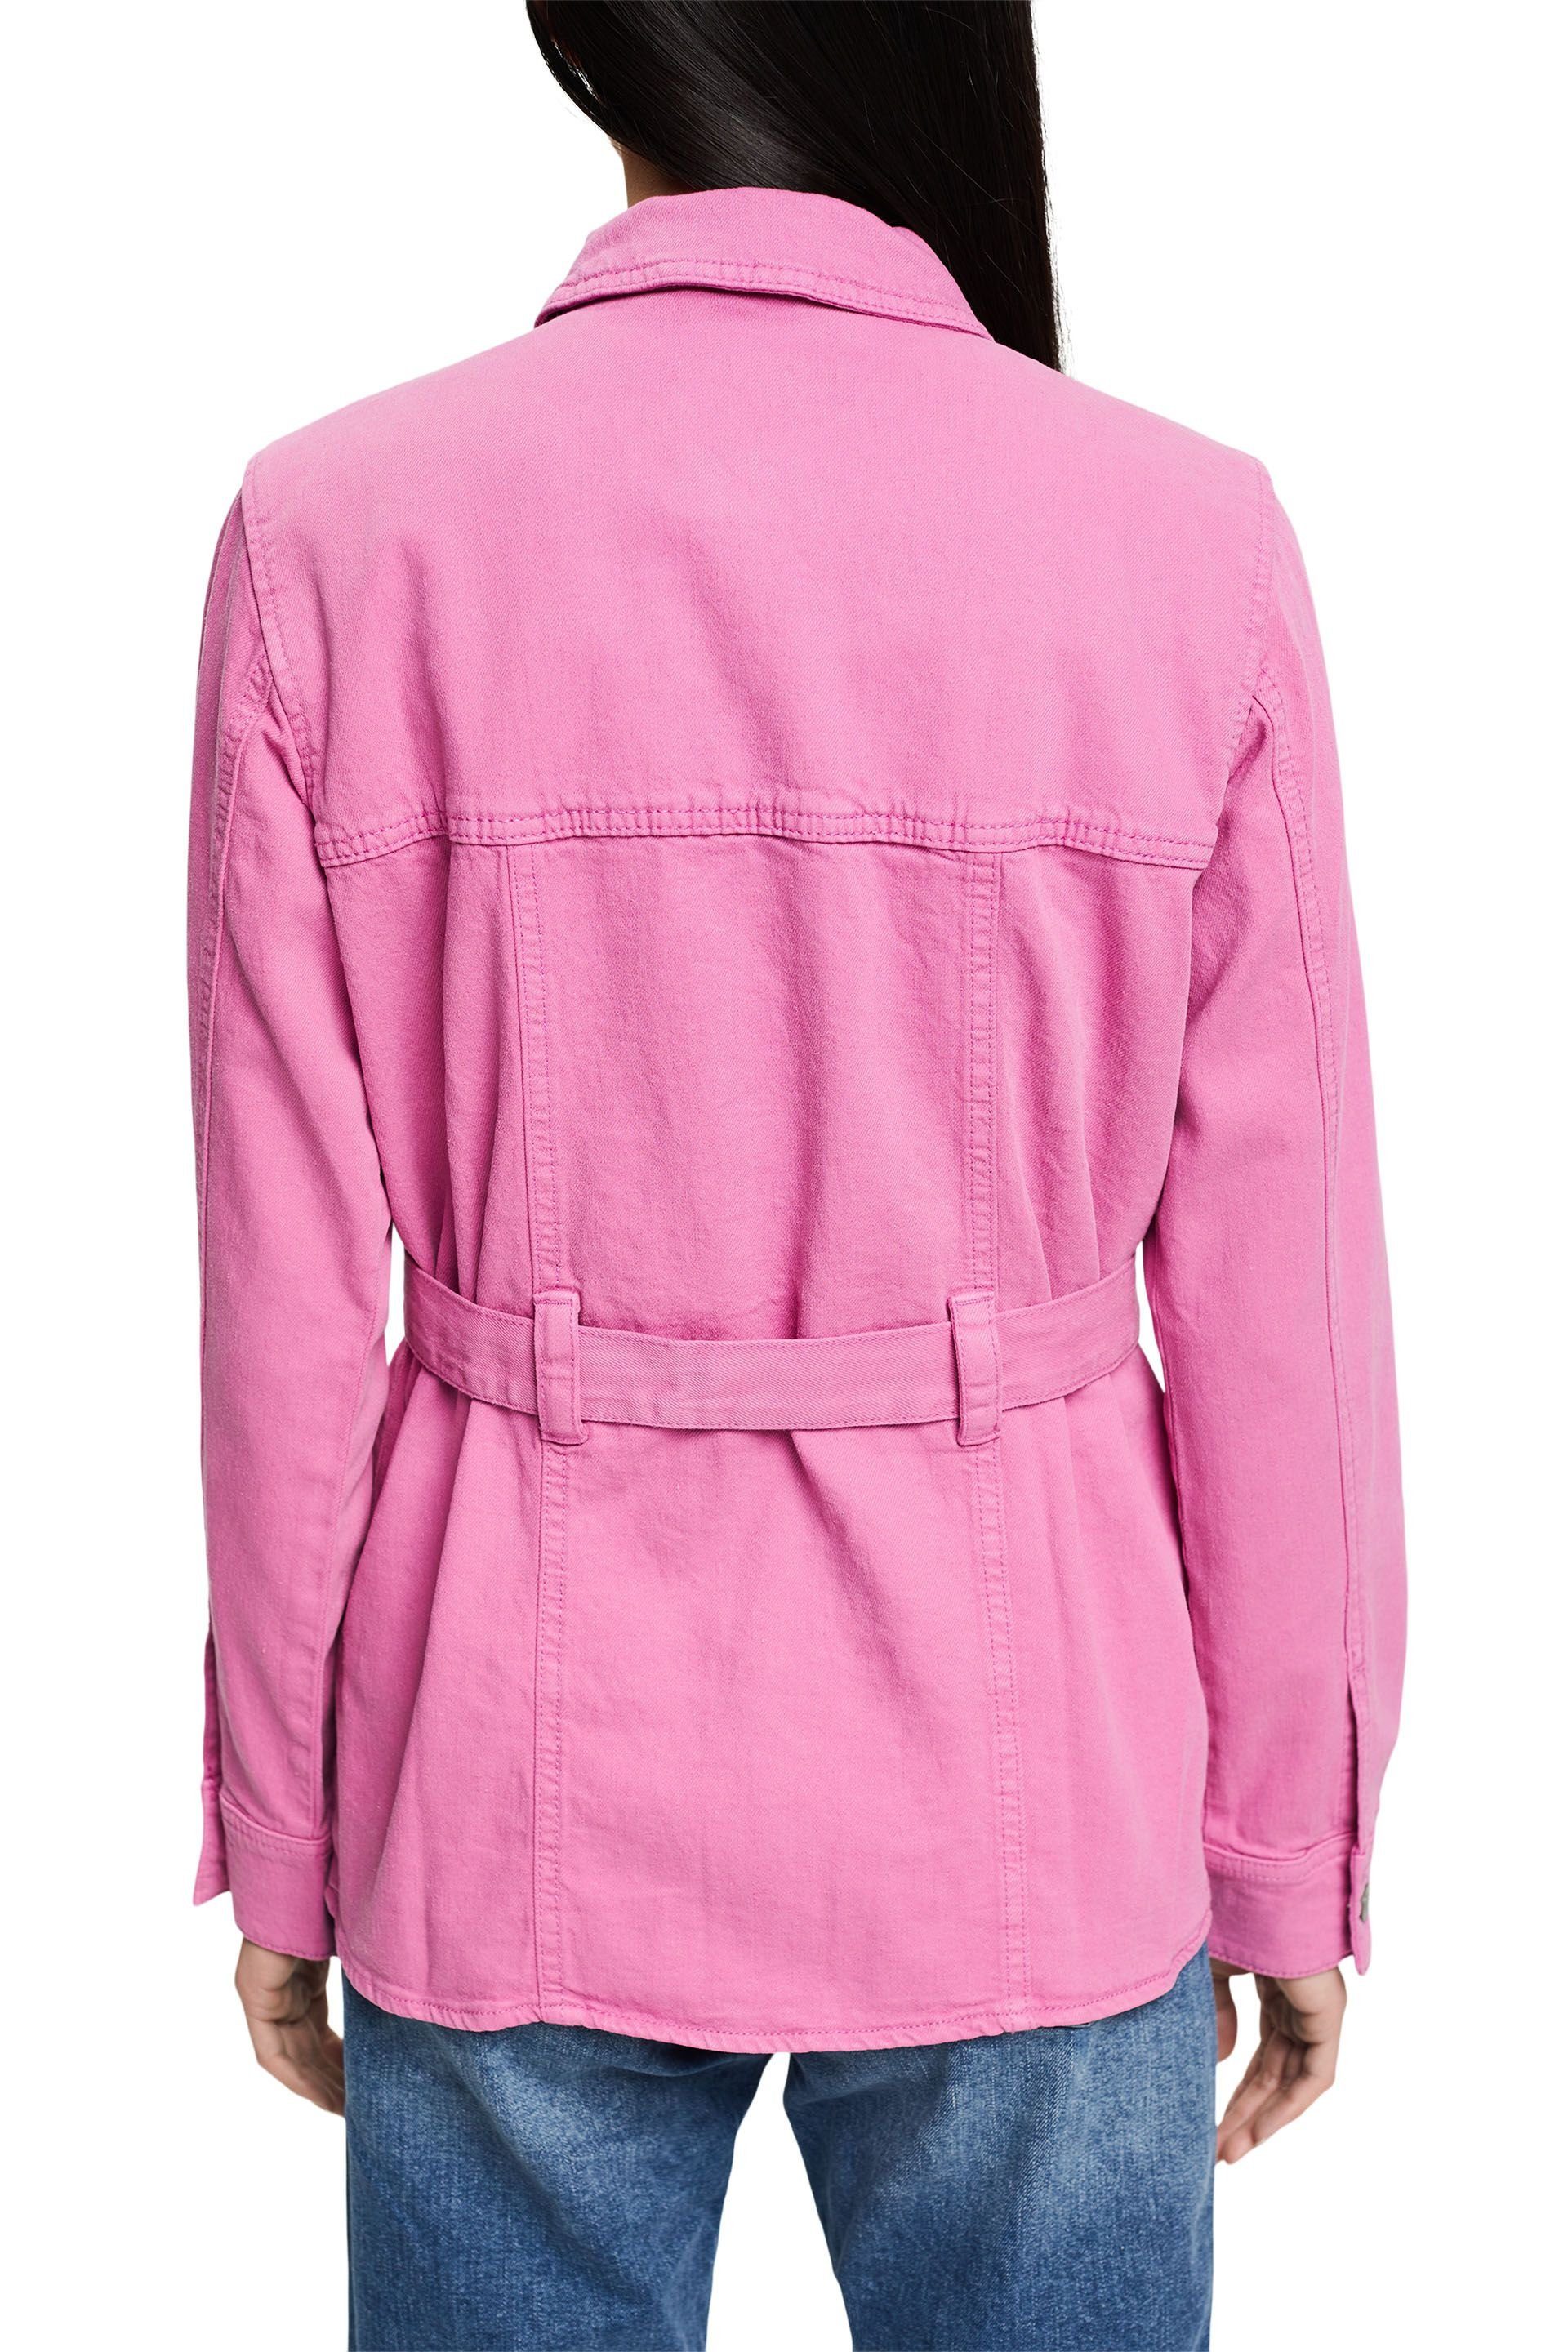 leichte Allwetterjacke fuchsia pink Bindegürtel Esprit Jacke mit